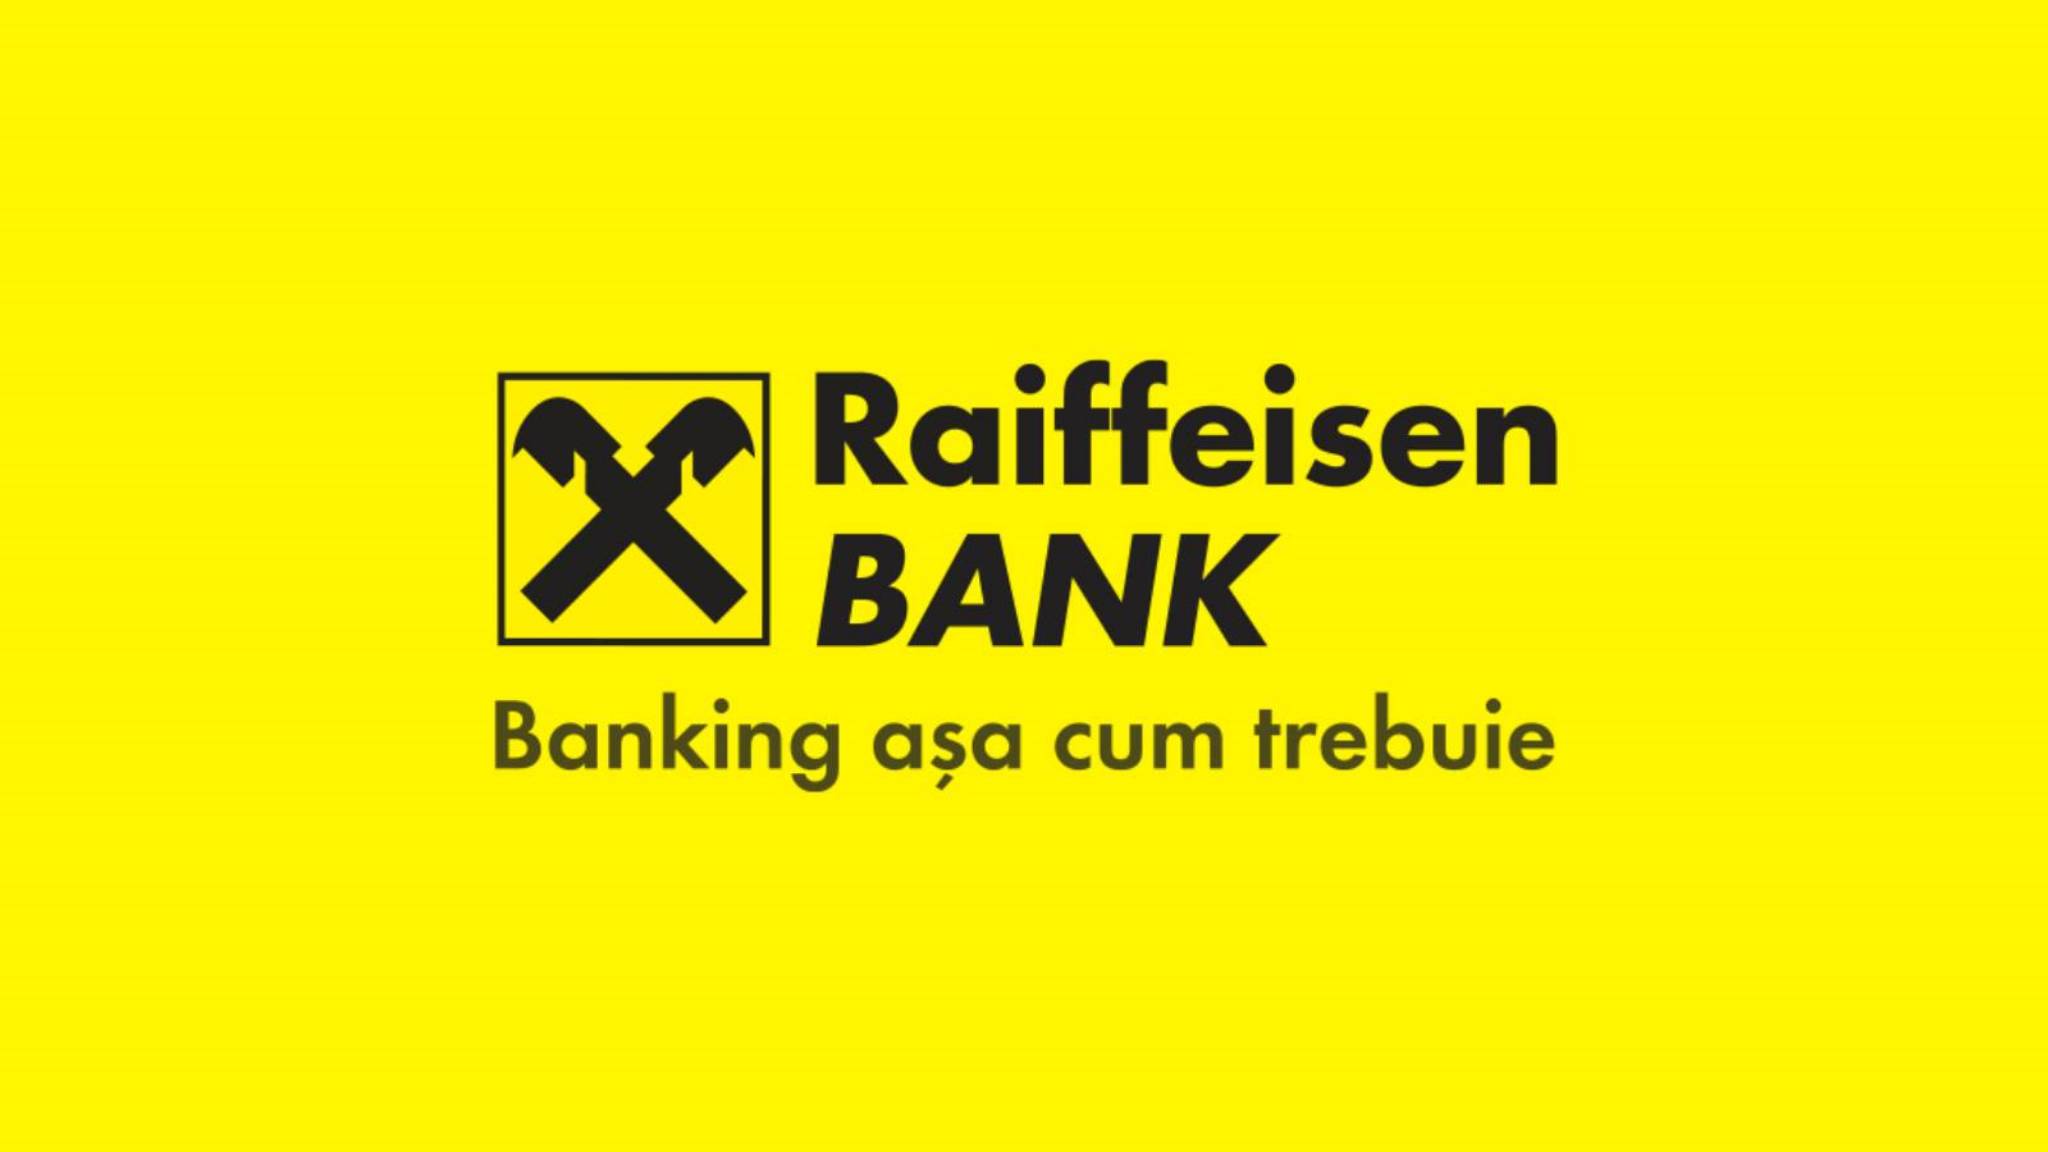 Raiffeisen Bank ADVARER os julen, hvordan du kan miste alle dine bankpenge